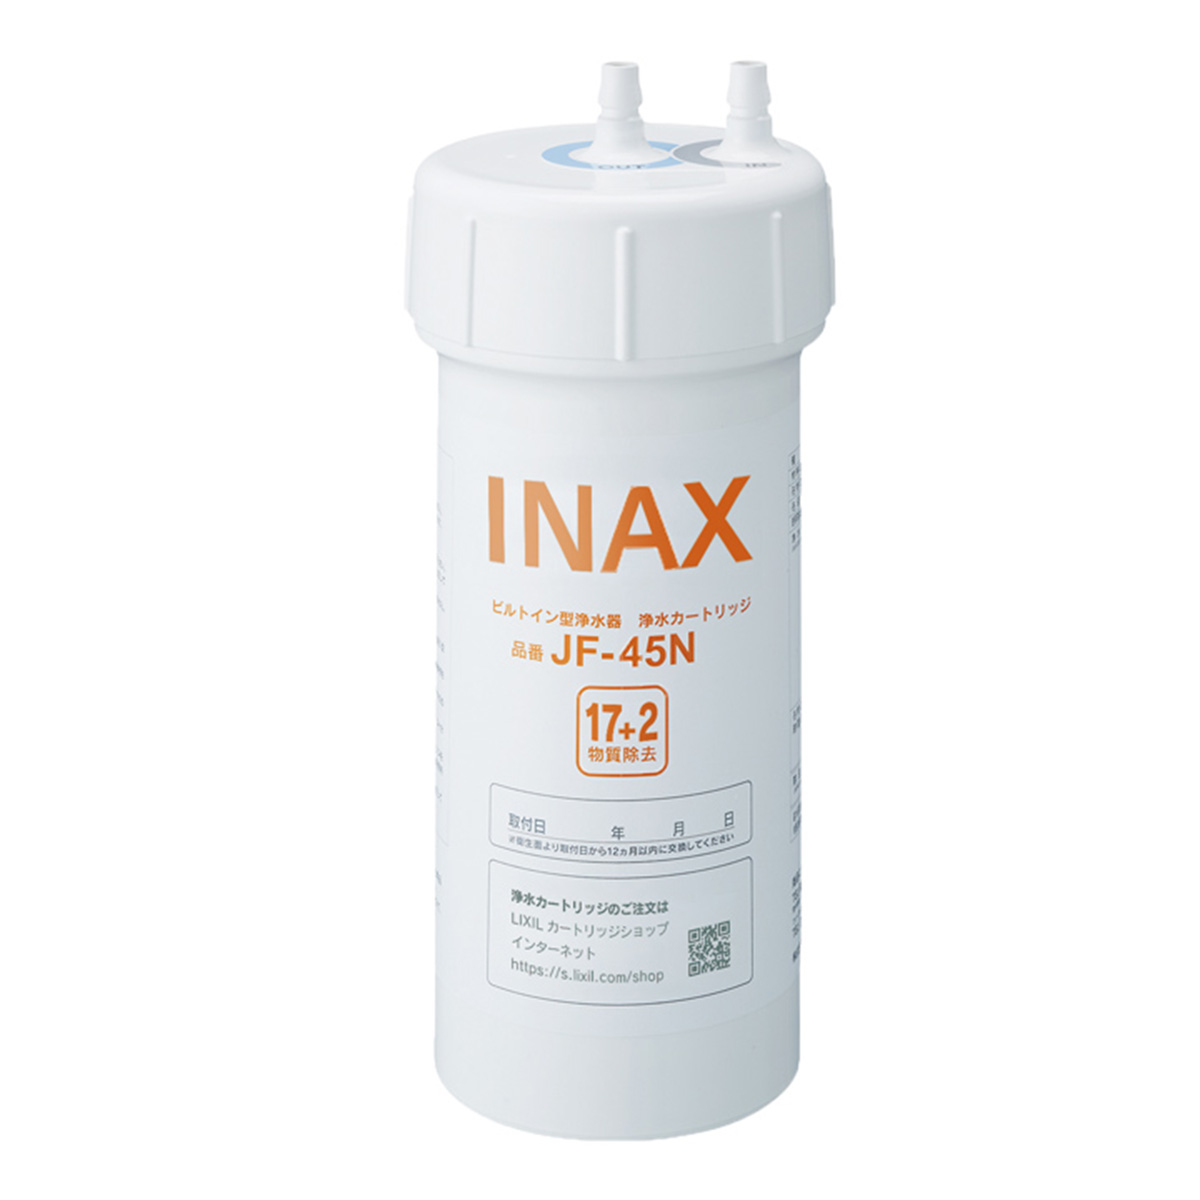 INAX 交換用浄水カートリッジ 17+2物質除去タイプ